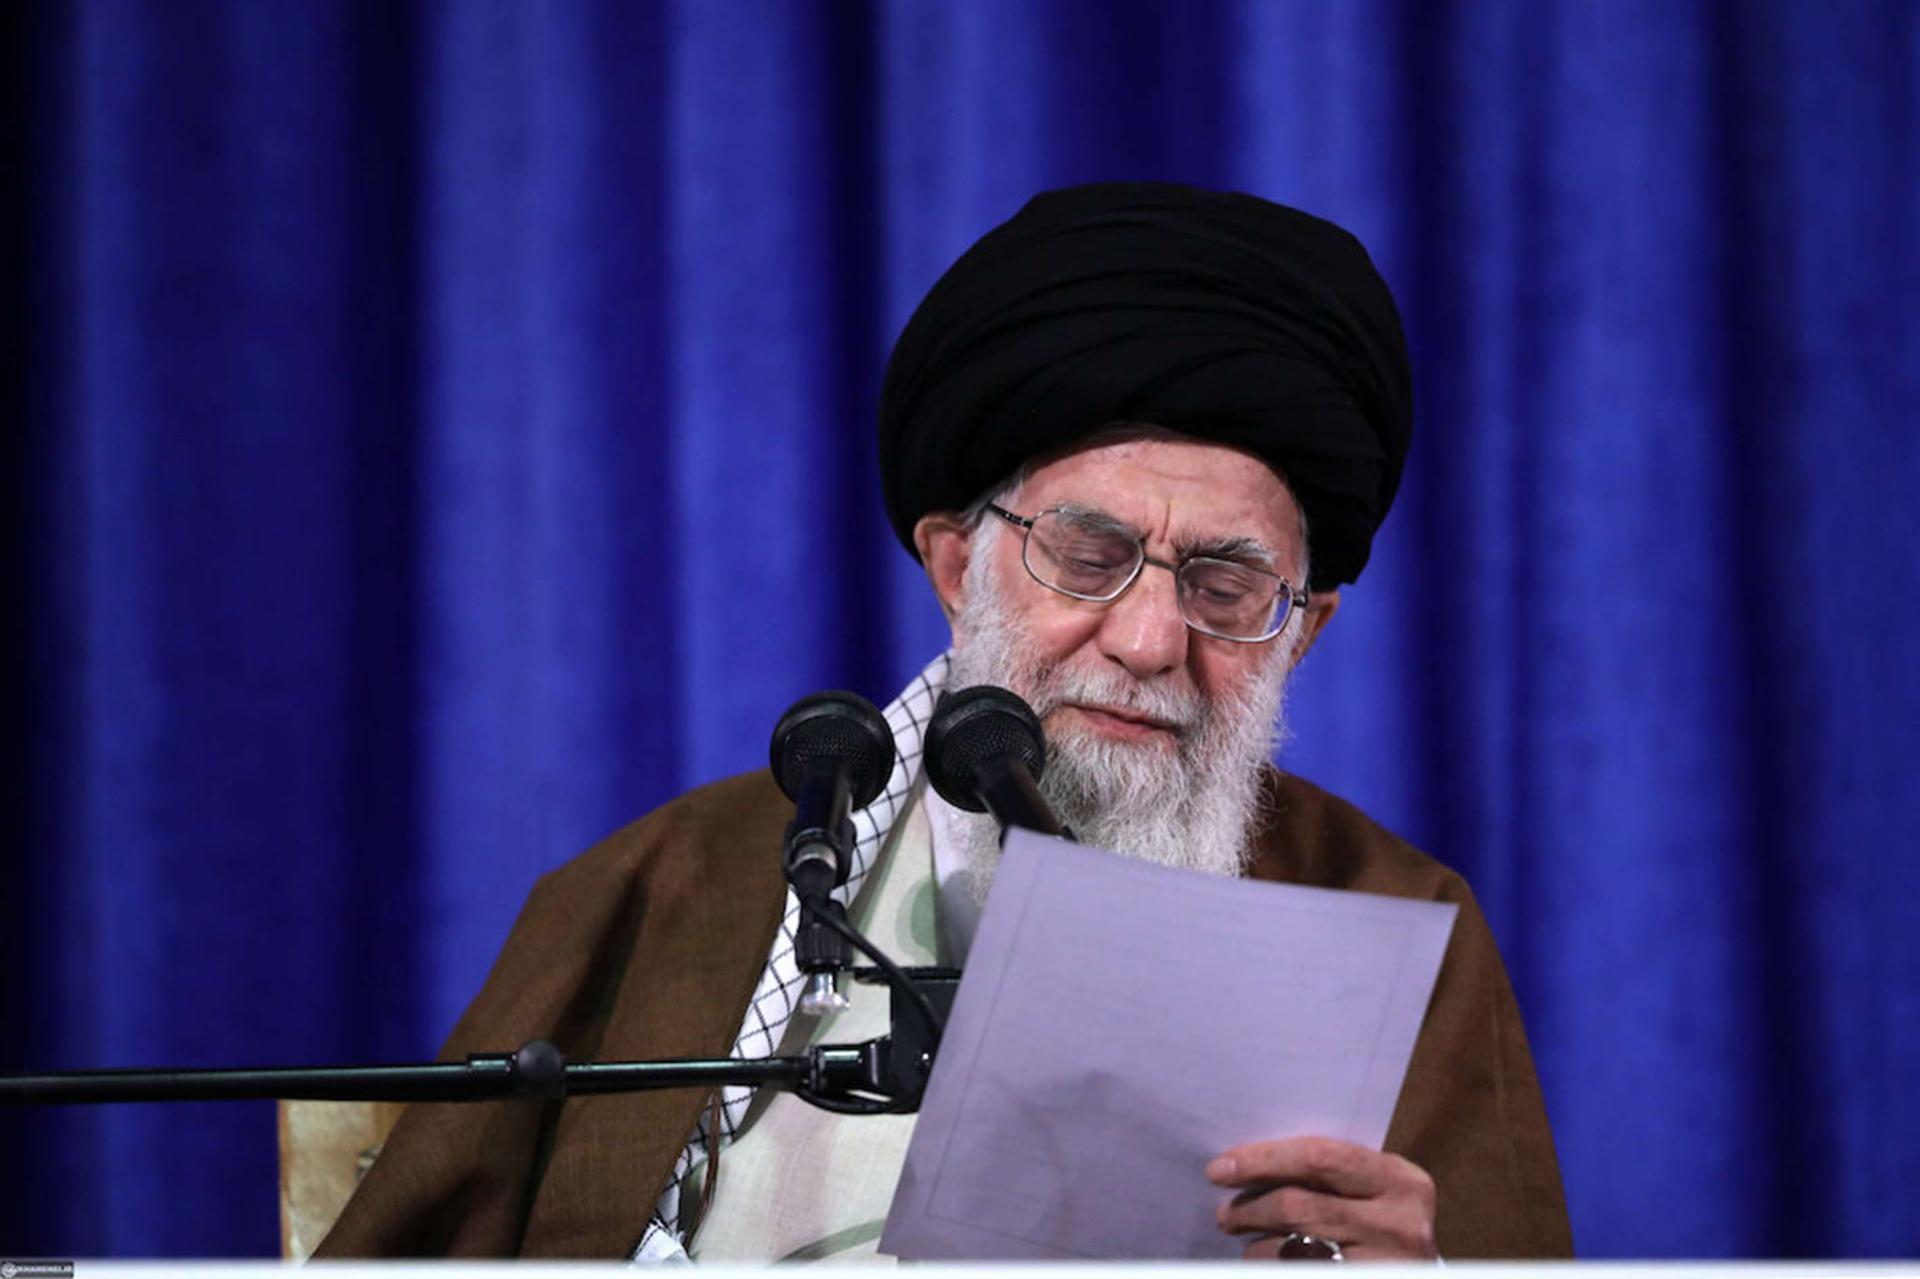 الزعيم الإيراني خامنئي يقرأ رده على انسحاب الولايات المتحدة من الاتفاق النووي